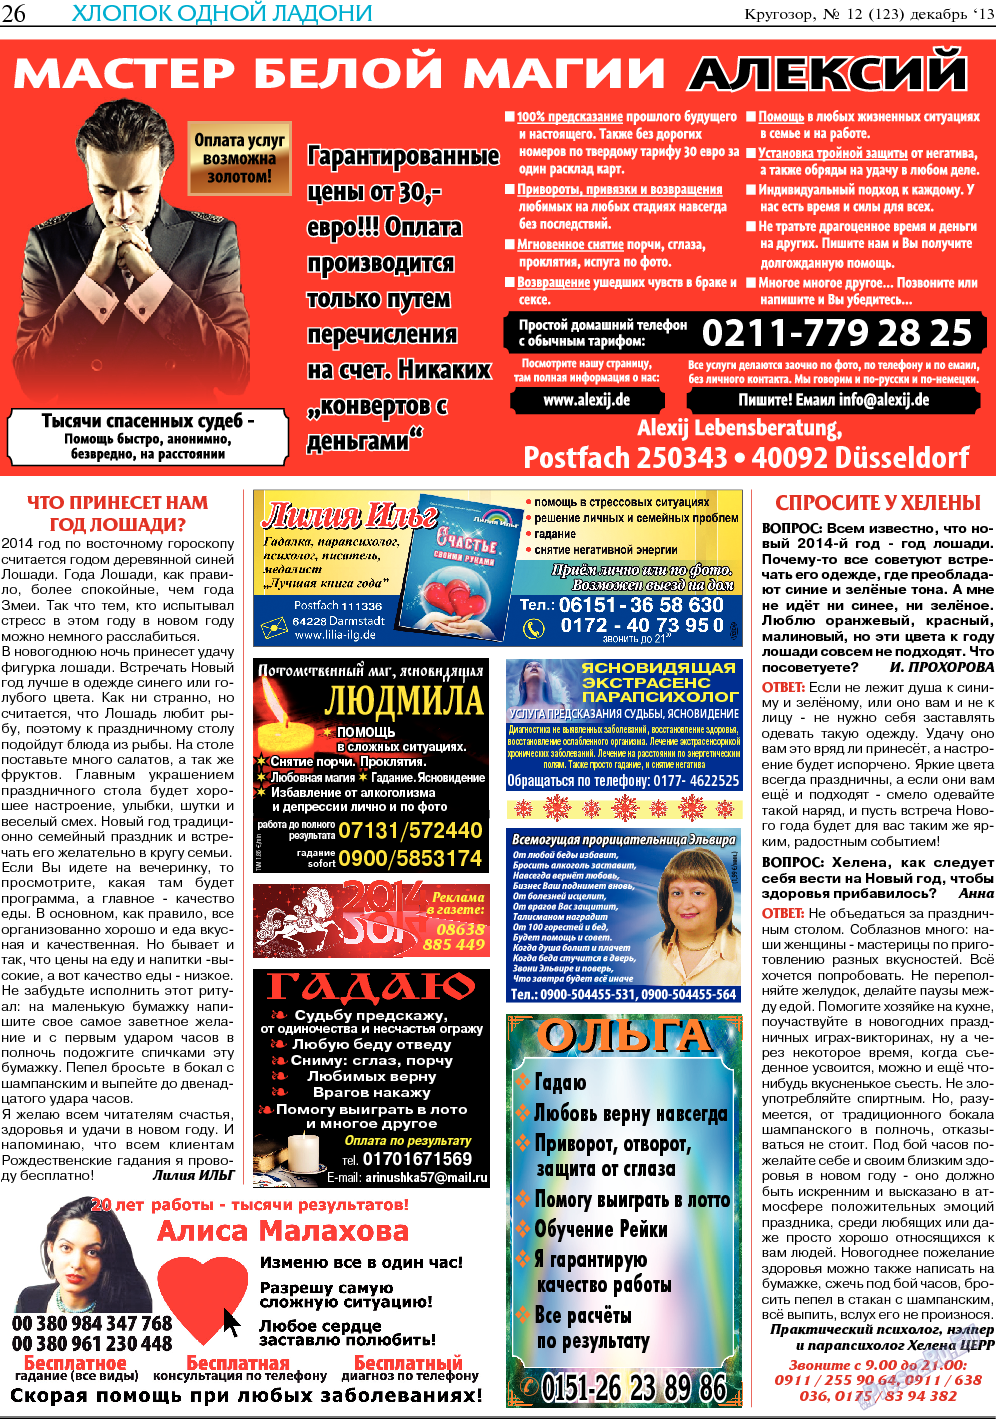 Кругозор, газета. 2013 №12 стр.26